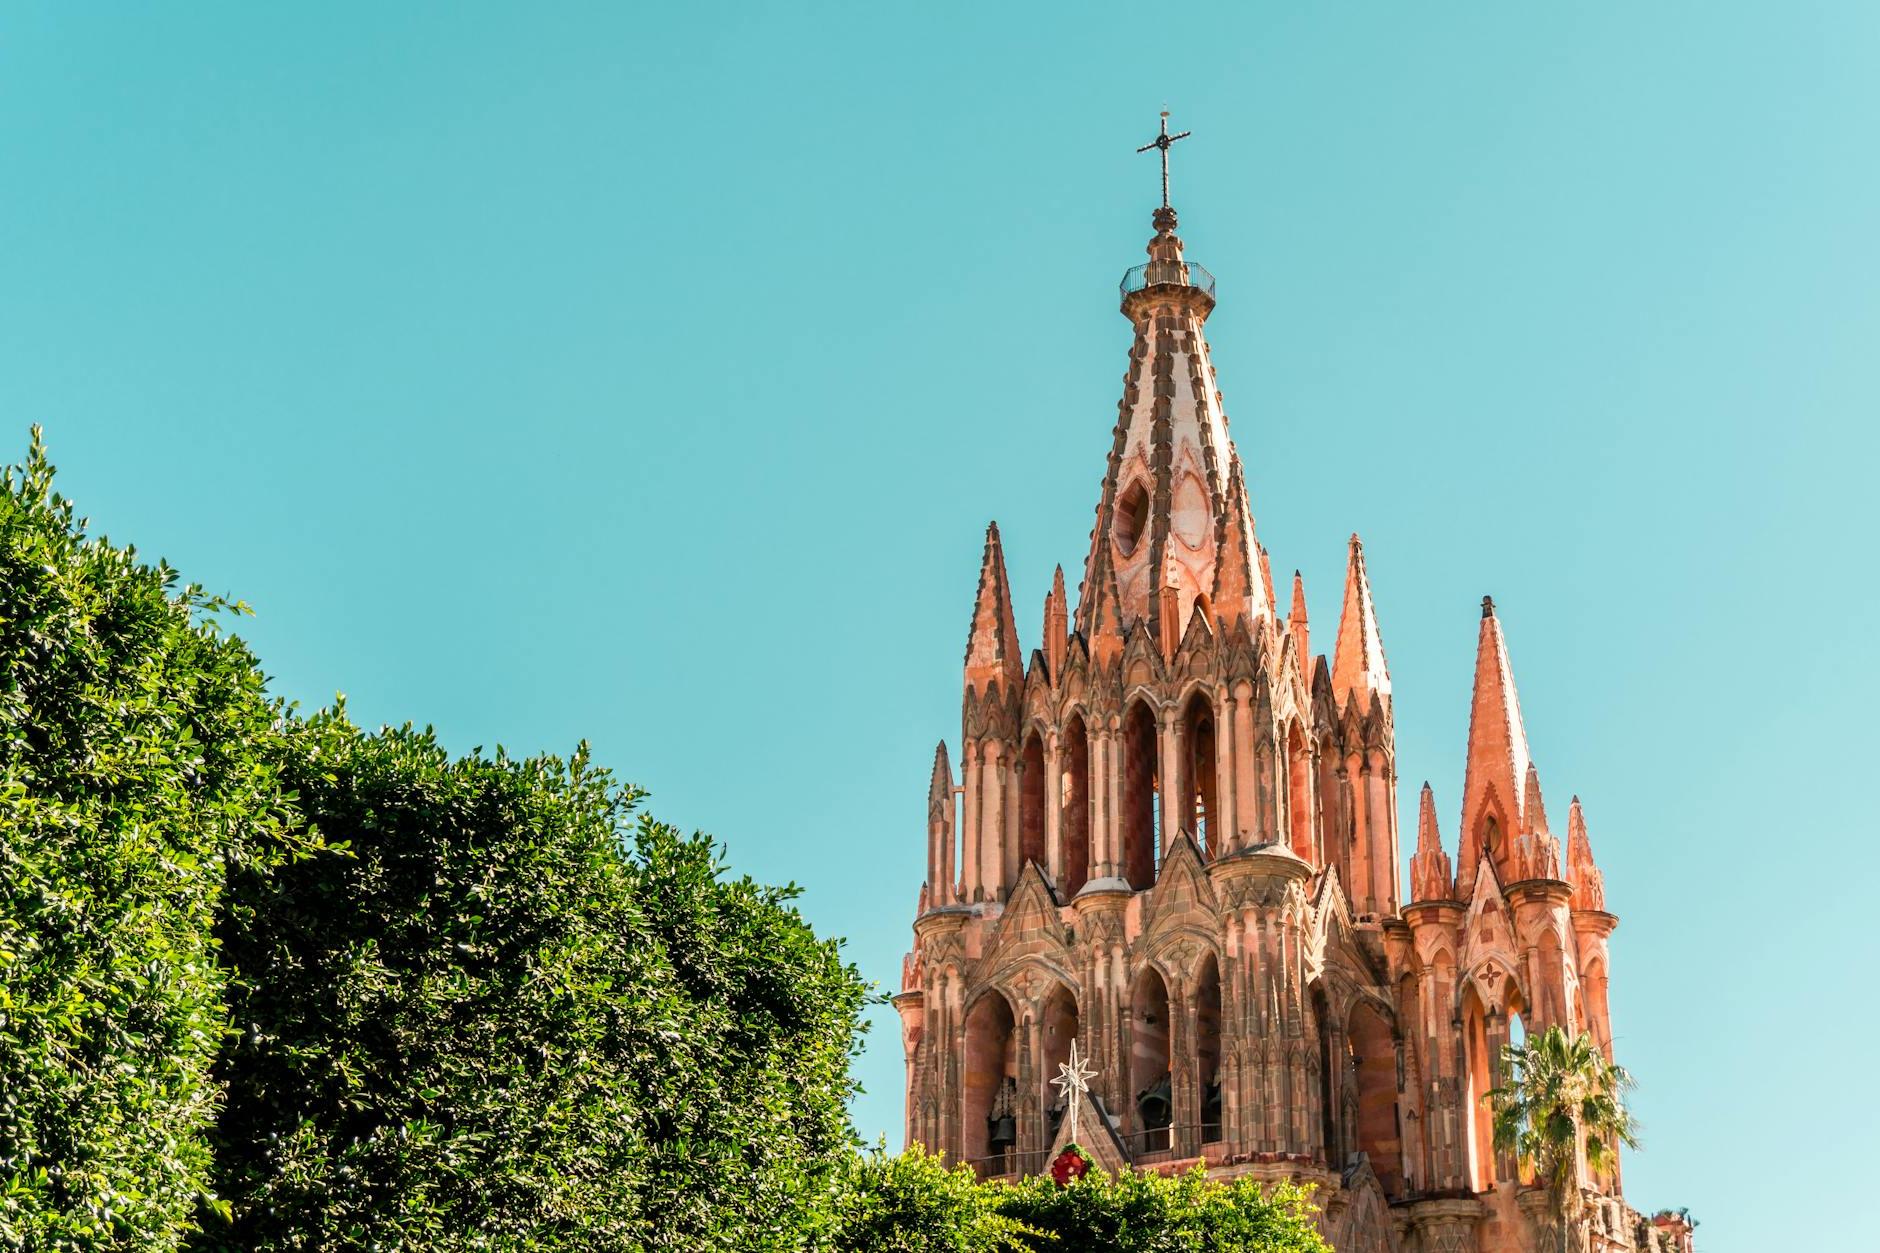 Parish Church of San Miguel Arcangel in San Miguel de Allende